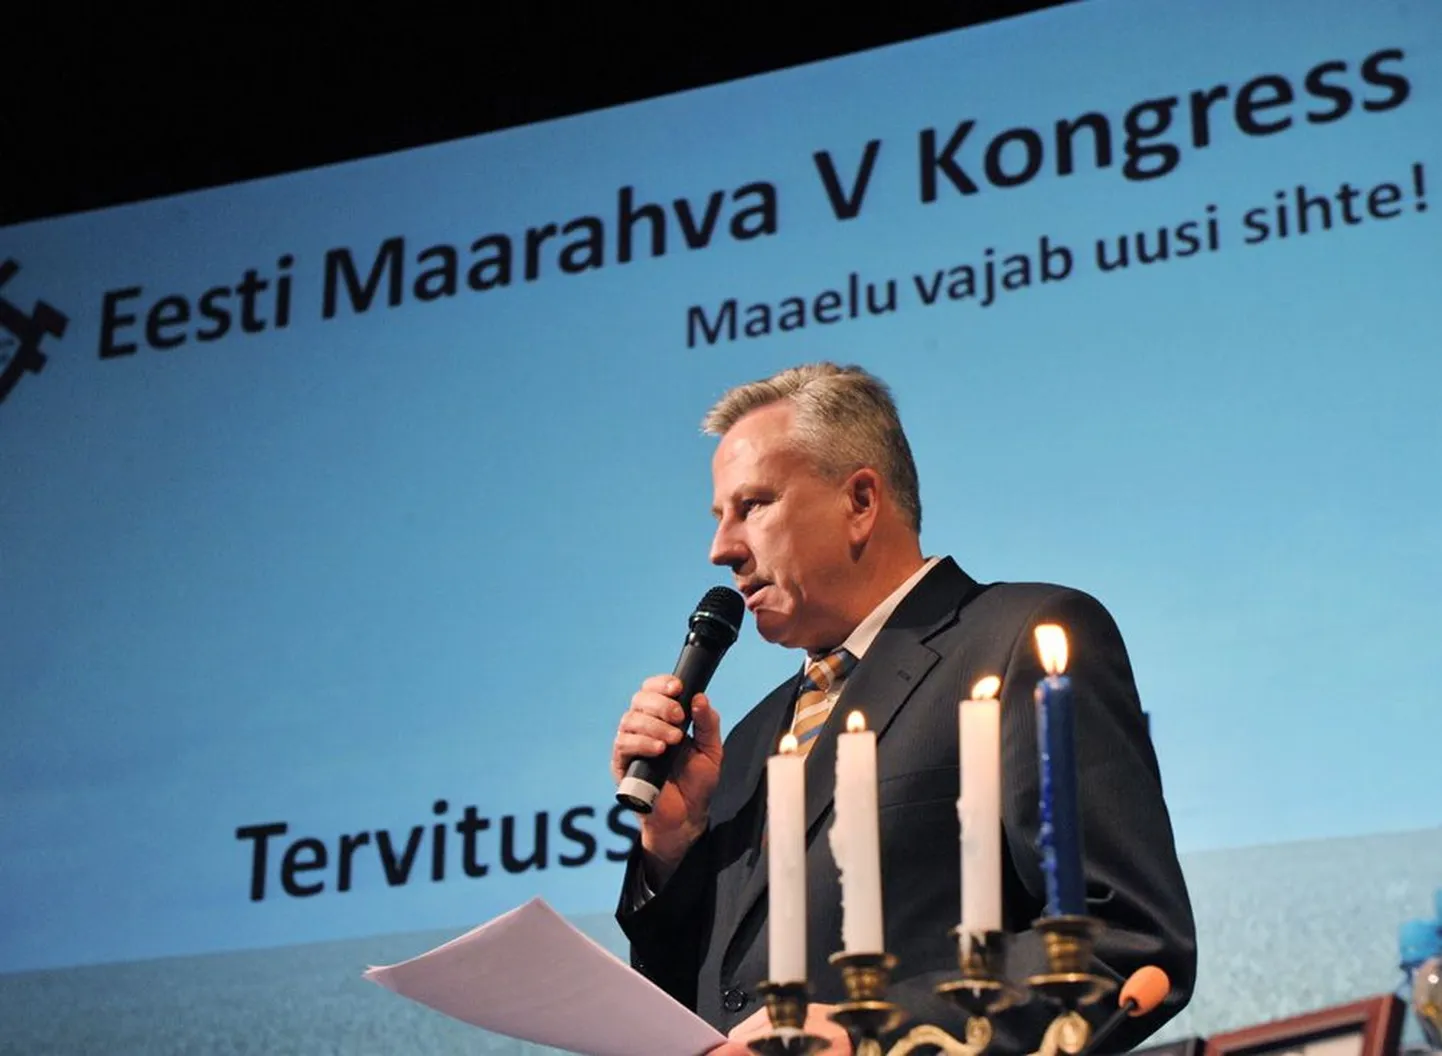 Maarahva kongressi korraldanud keskerakondlane Arvo Sarapuu on andnud mõista, et Keskerakond on ainus maarahva esindaja.